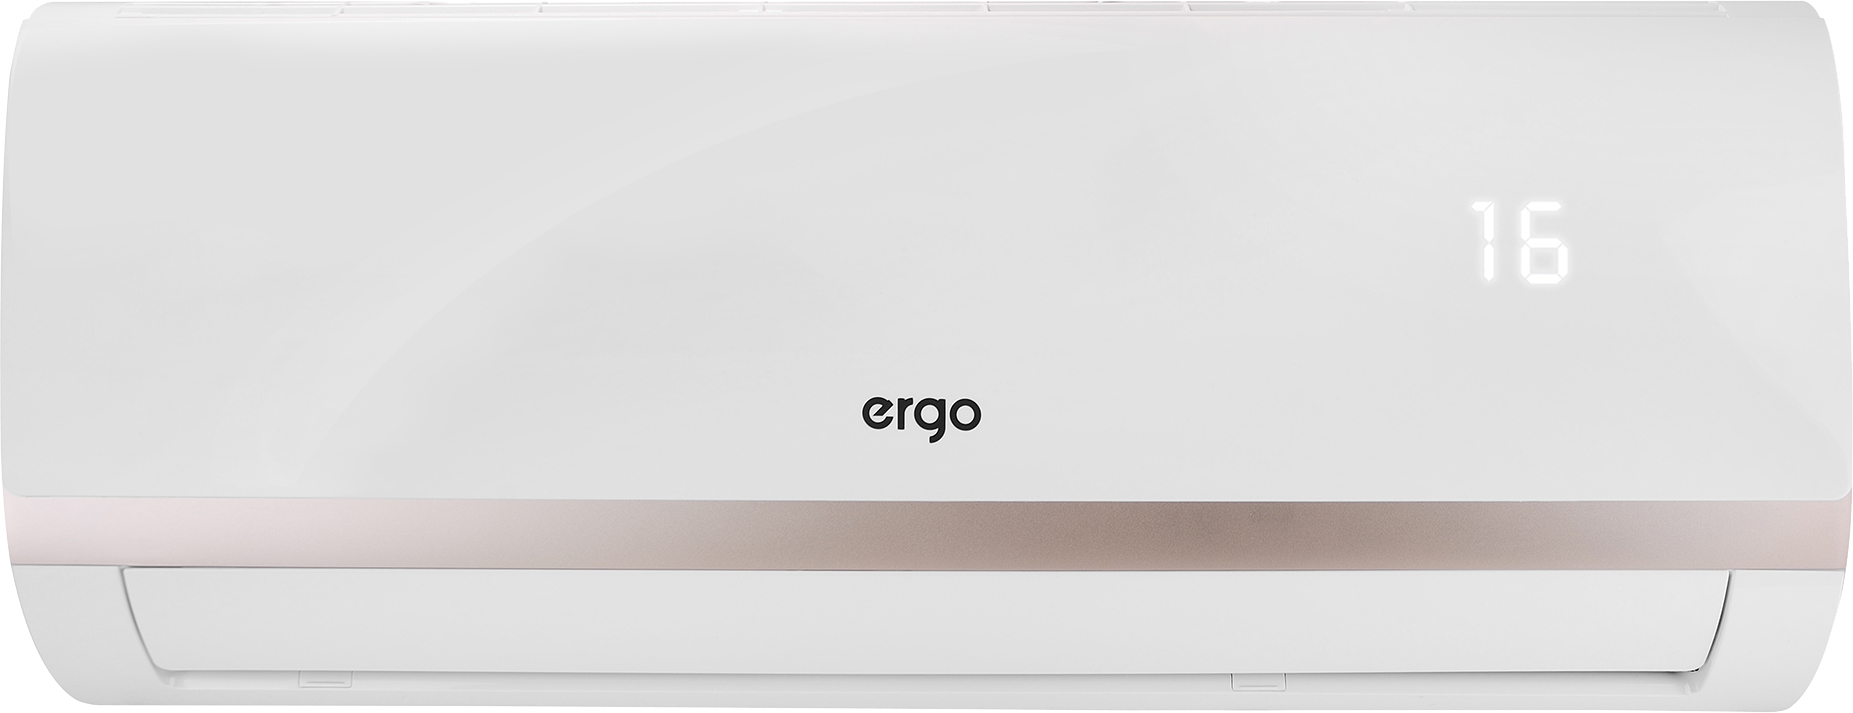 Кондиционер Ergo сплит-система Ergo ACI 1830 CHW